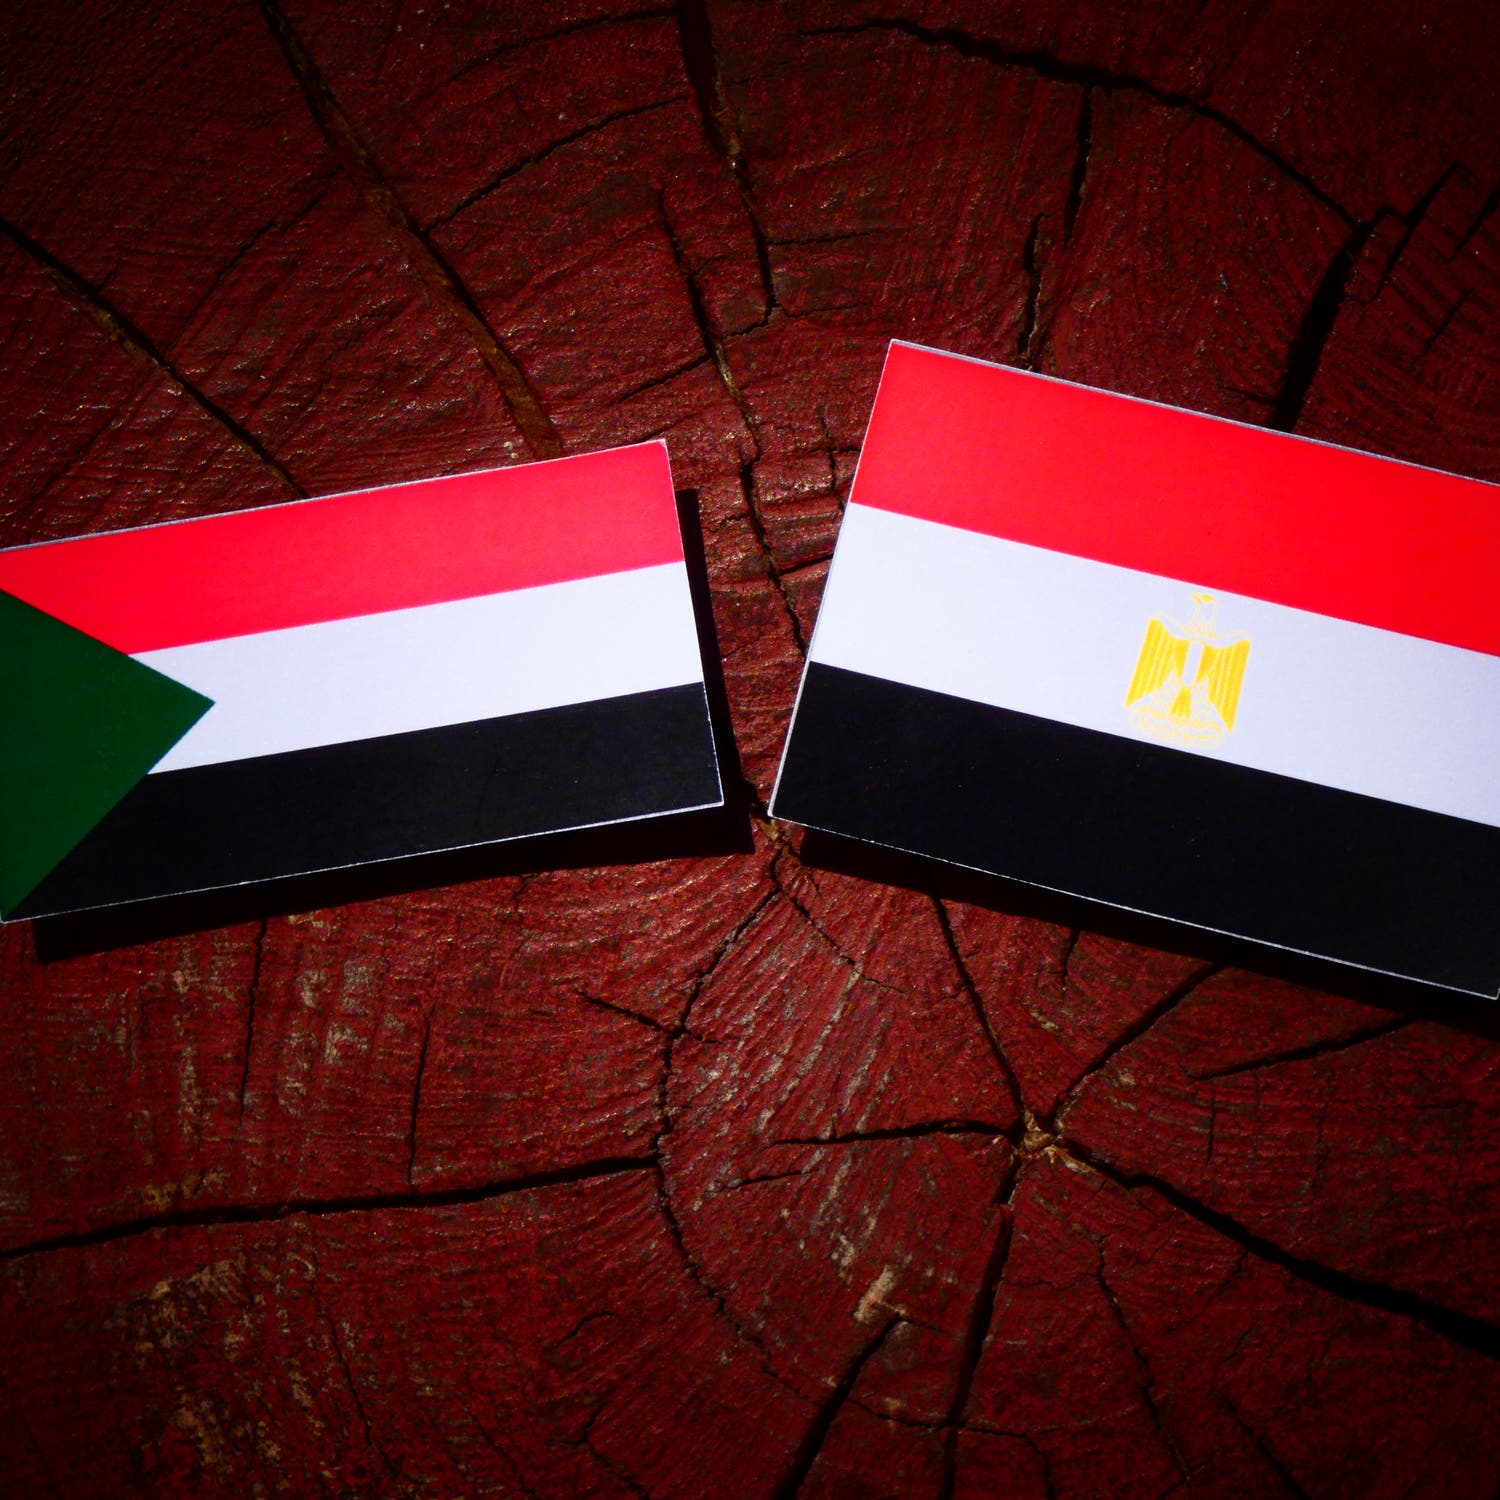 رئيس أركان مصر إلى السودان.. لبحث التعاون الأمني والعسكري